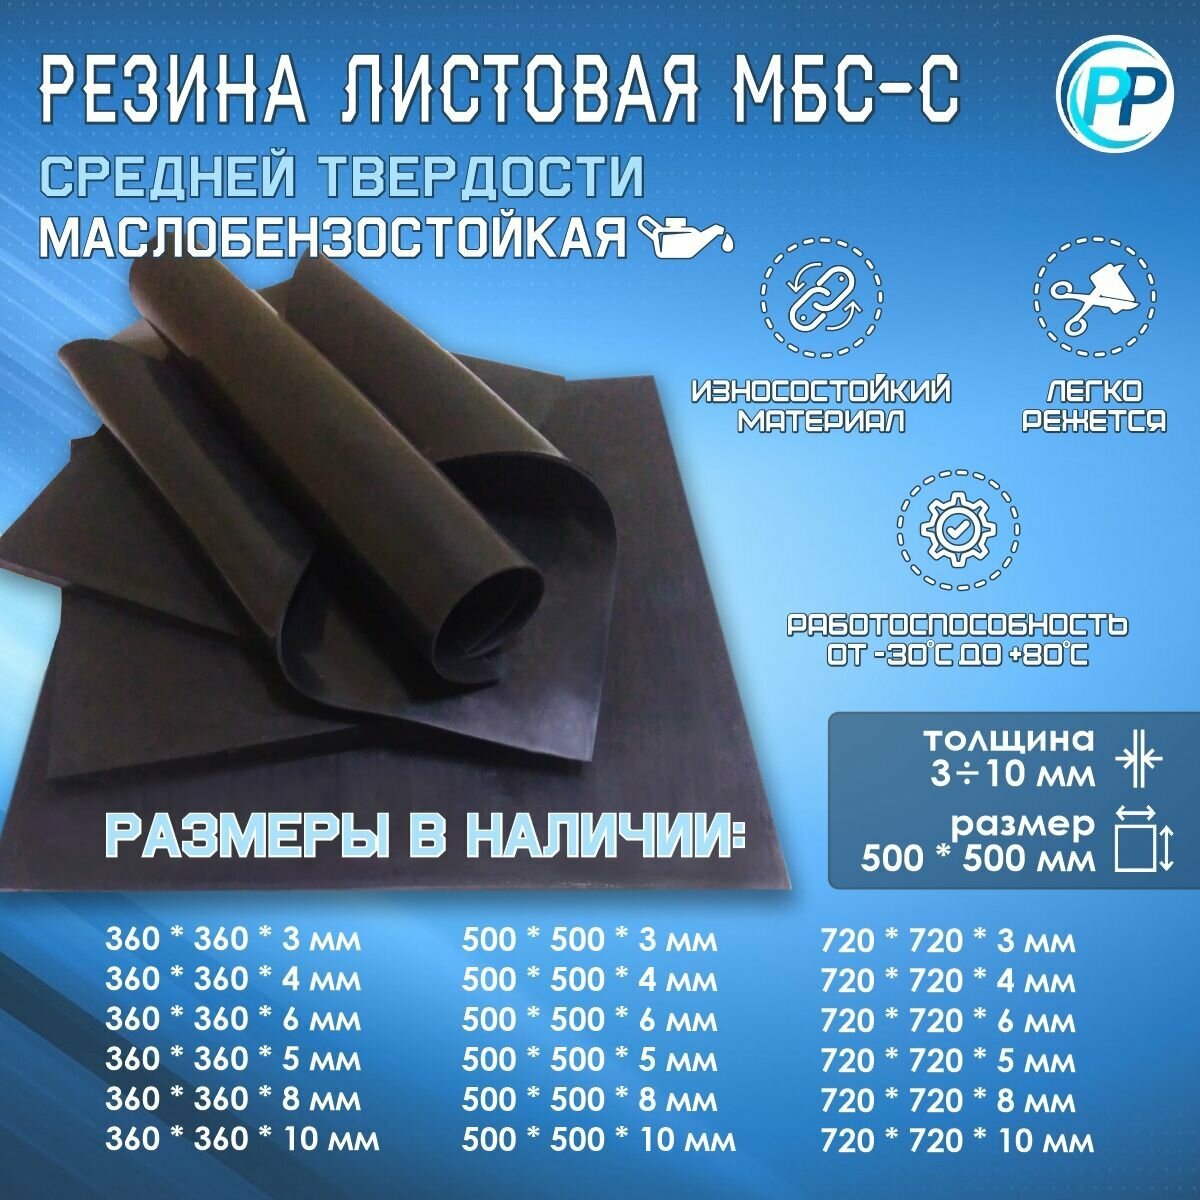 Резина листовая 2-ф 1 МБС (Маслобензостоикая) 4 мм 500х500 мм